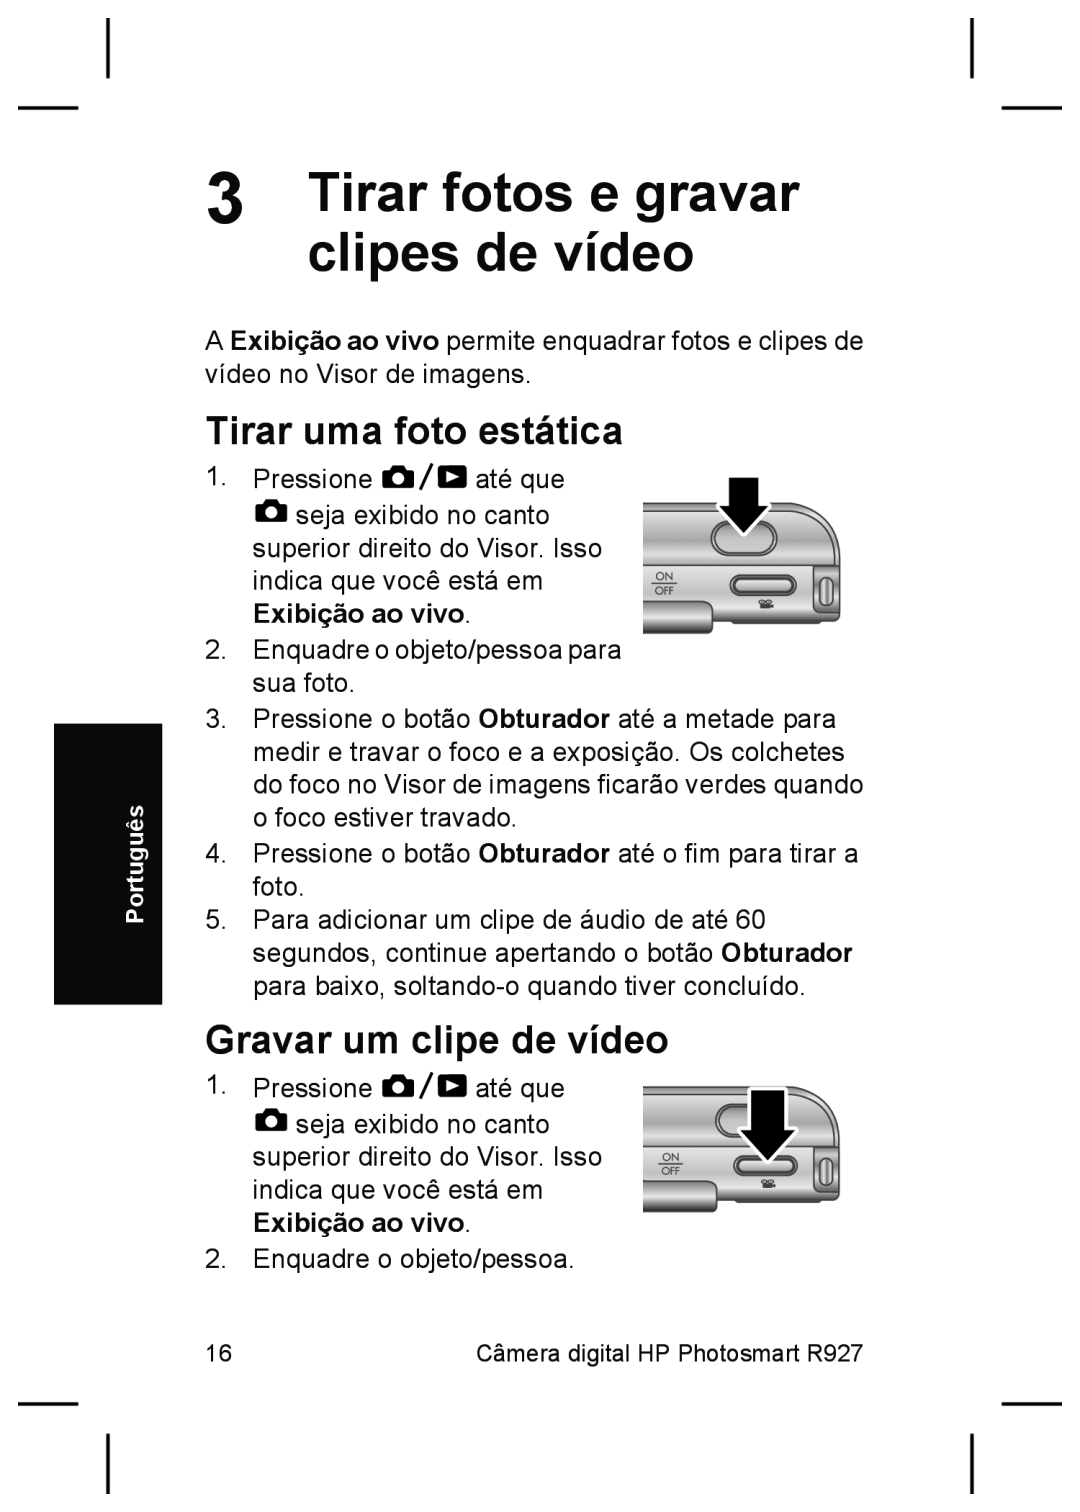 HP R927 manual Tirar fotos e gravar, clipes de vídeo, Tirar uma foto estática, Gravar um clipe de vídeo 